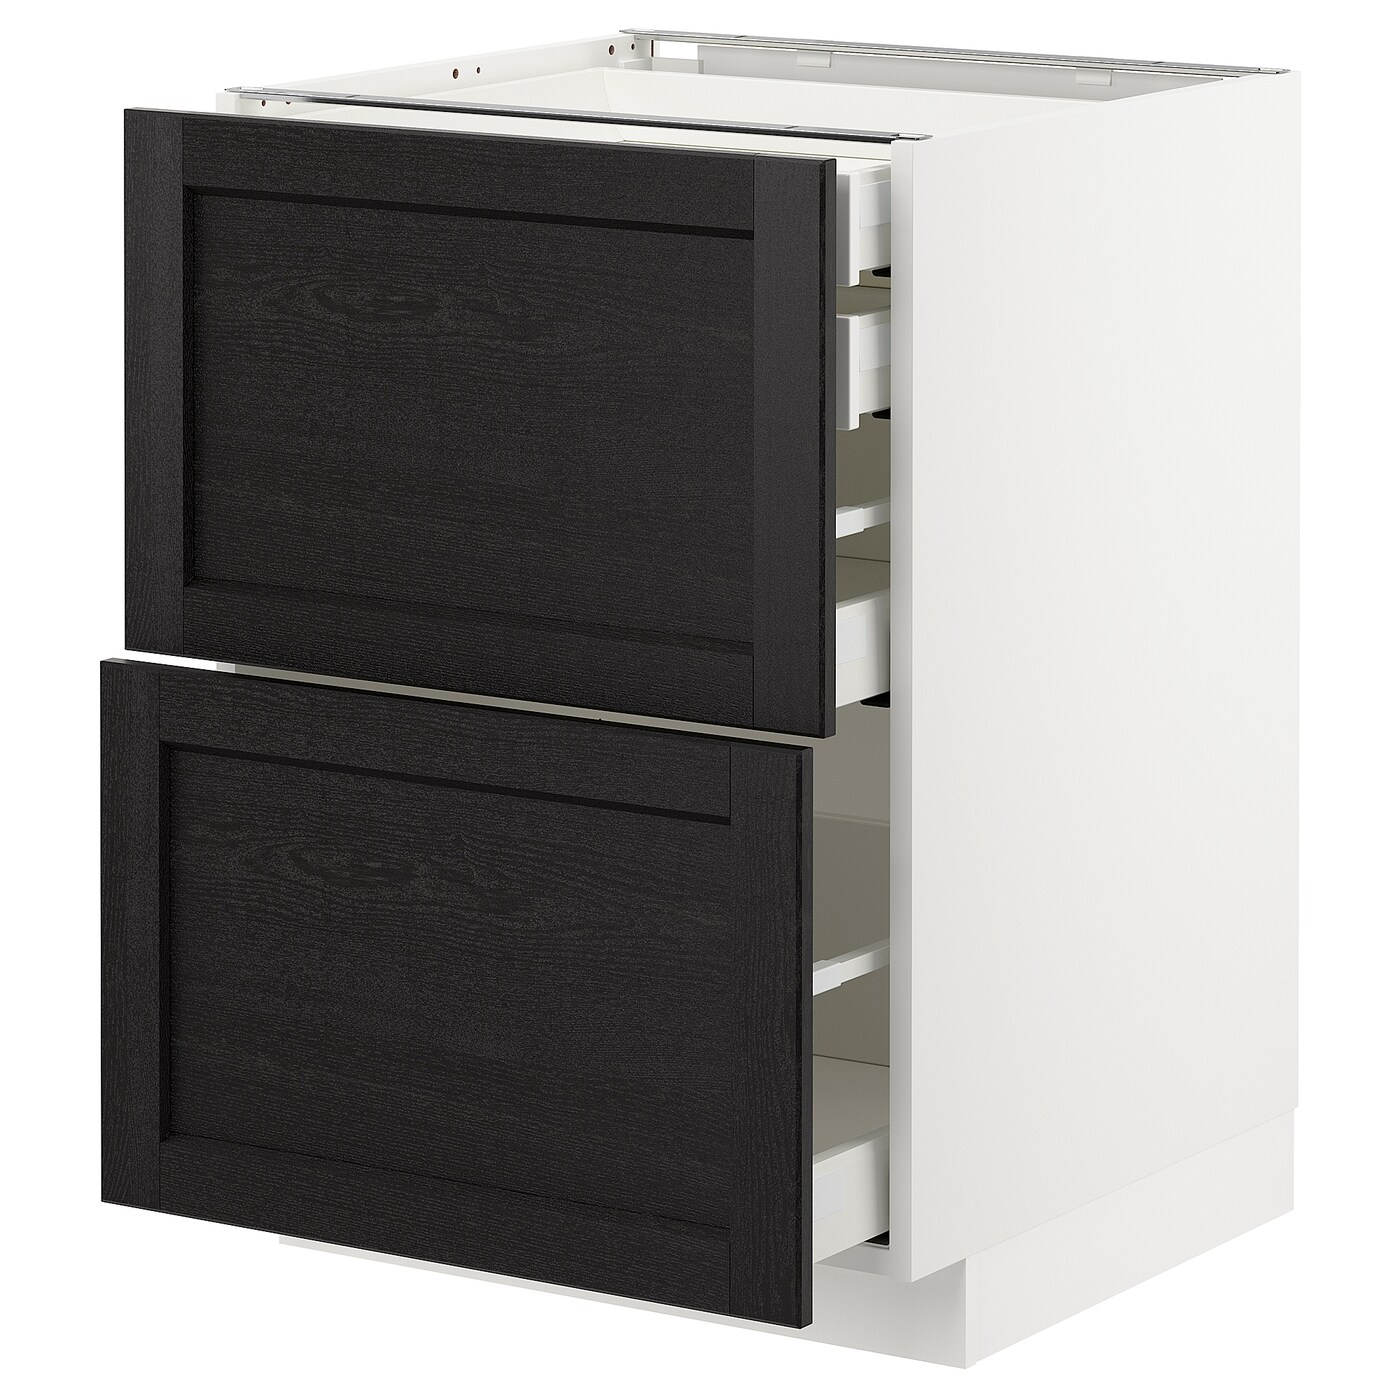 Напольный кухонный шкаф  - IKEA METOD MAXIMERA, 88x62x60см, белый/черный, МЕТОД МАКСИМЕРА ИКЕА